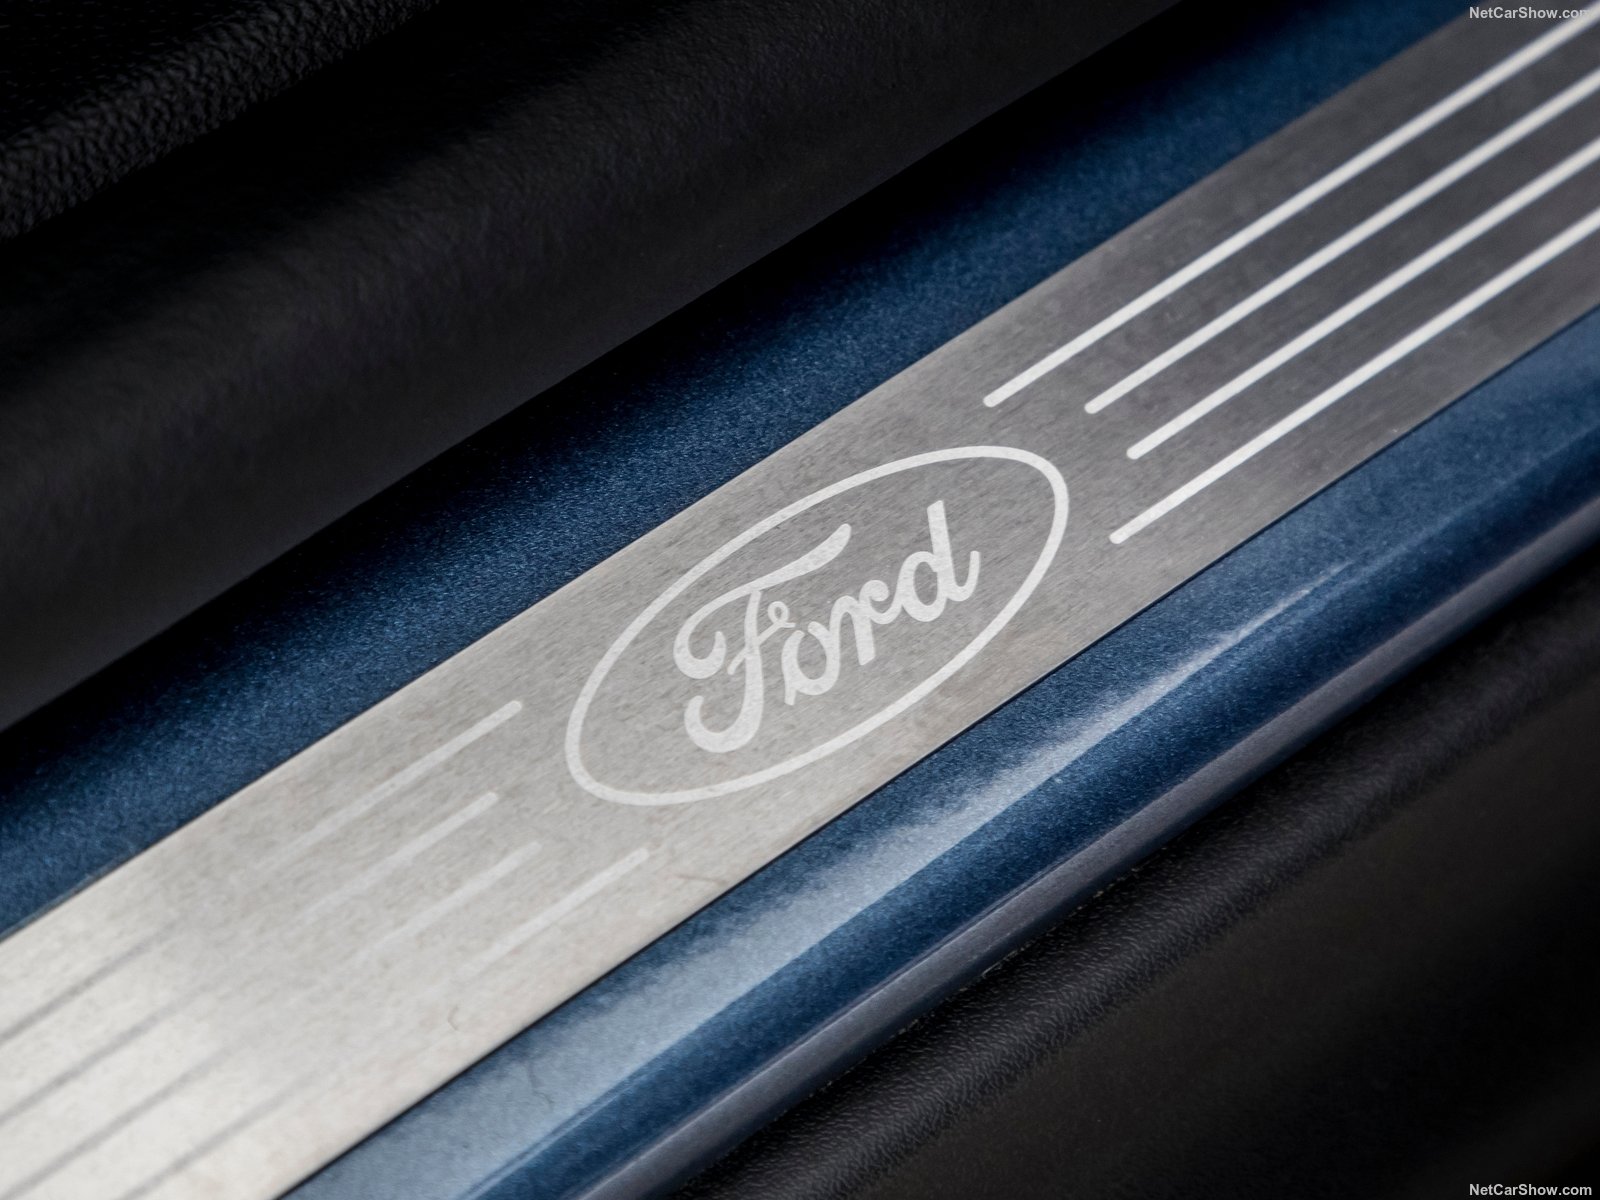 Североамериканский бренд Ford запатентовал новую технологию экологически чистых двигателей внутреннего сгорания